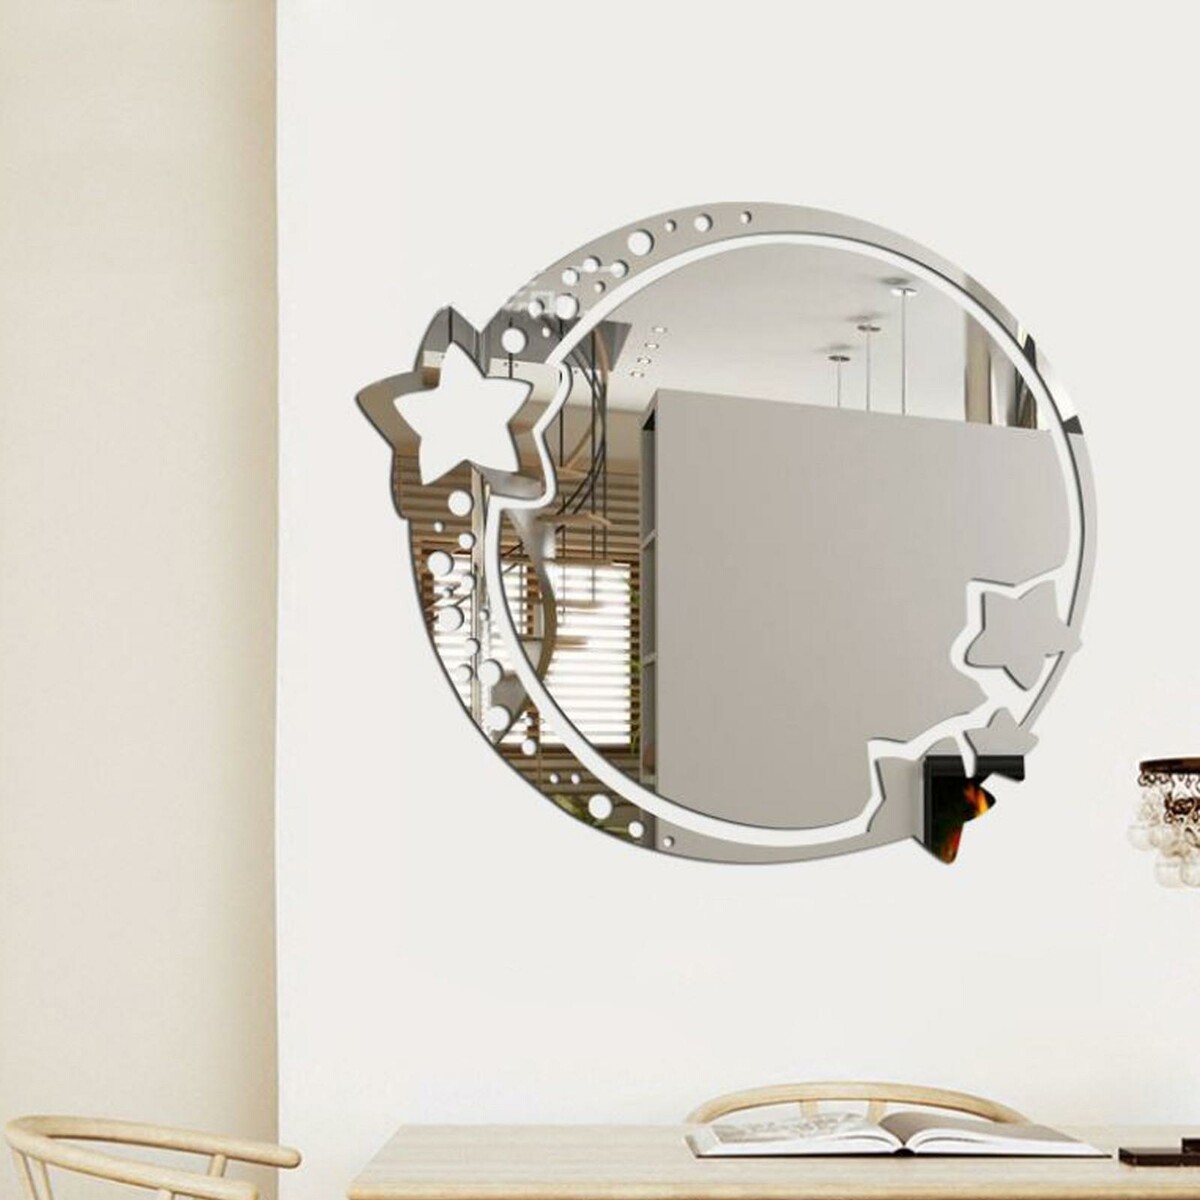 Зеркало настенное, наклейки интерьерные, зеркальные, декор на стену, панно 22 х 19 см зеркало ученика 3 е изд